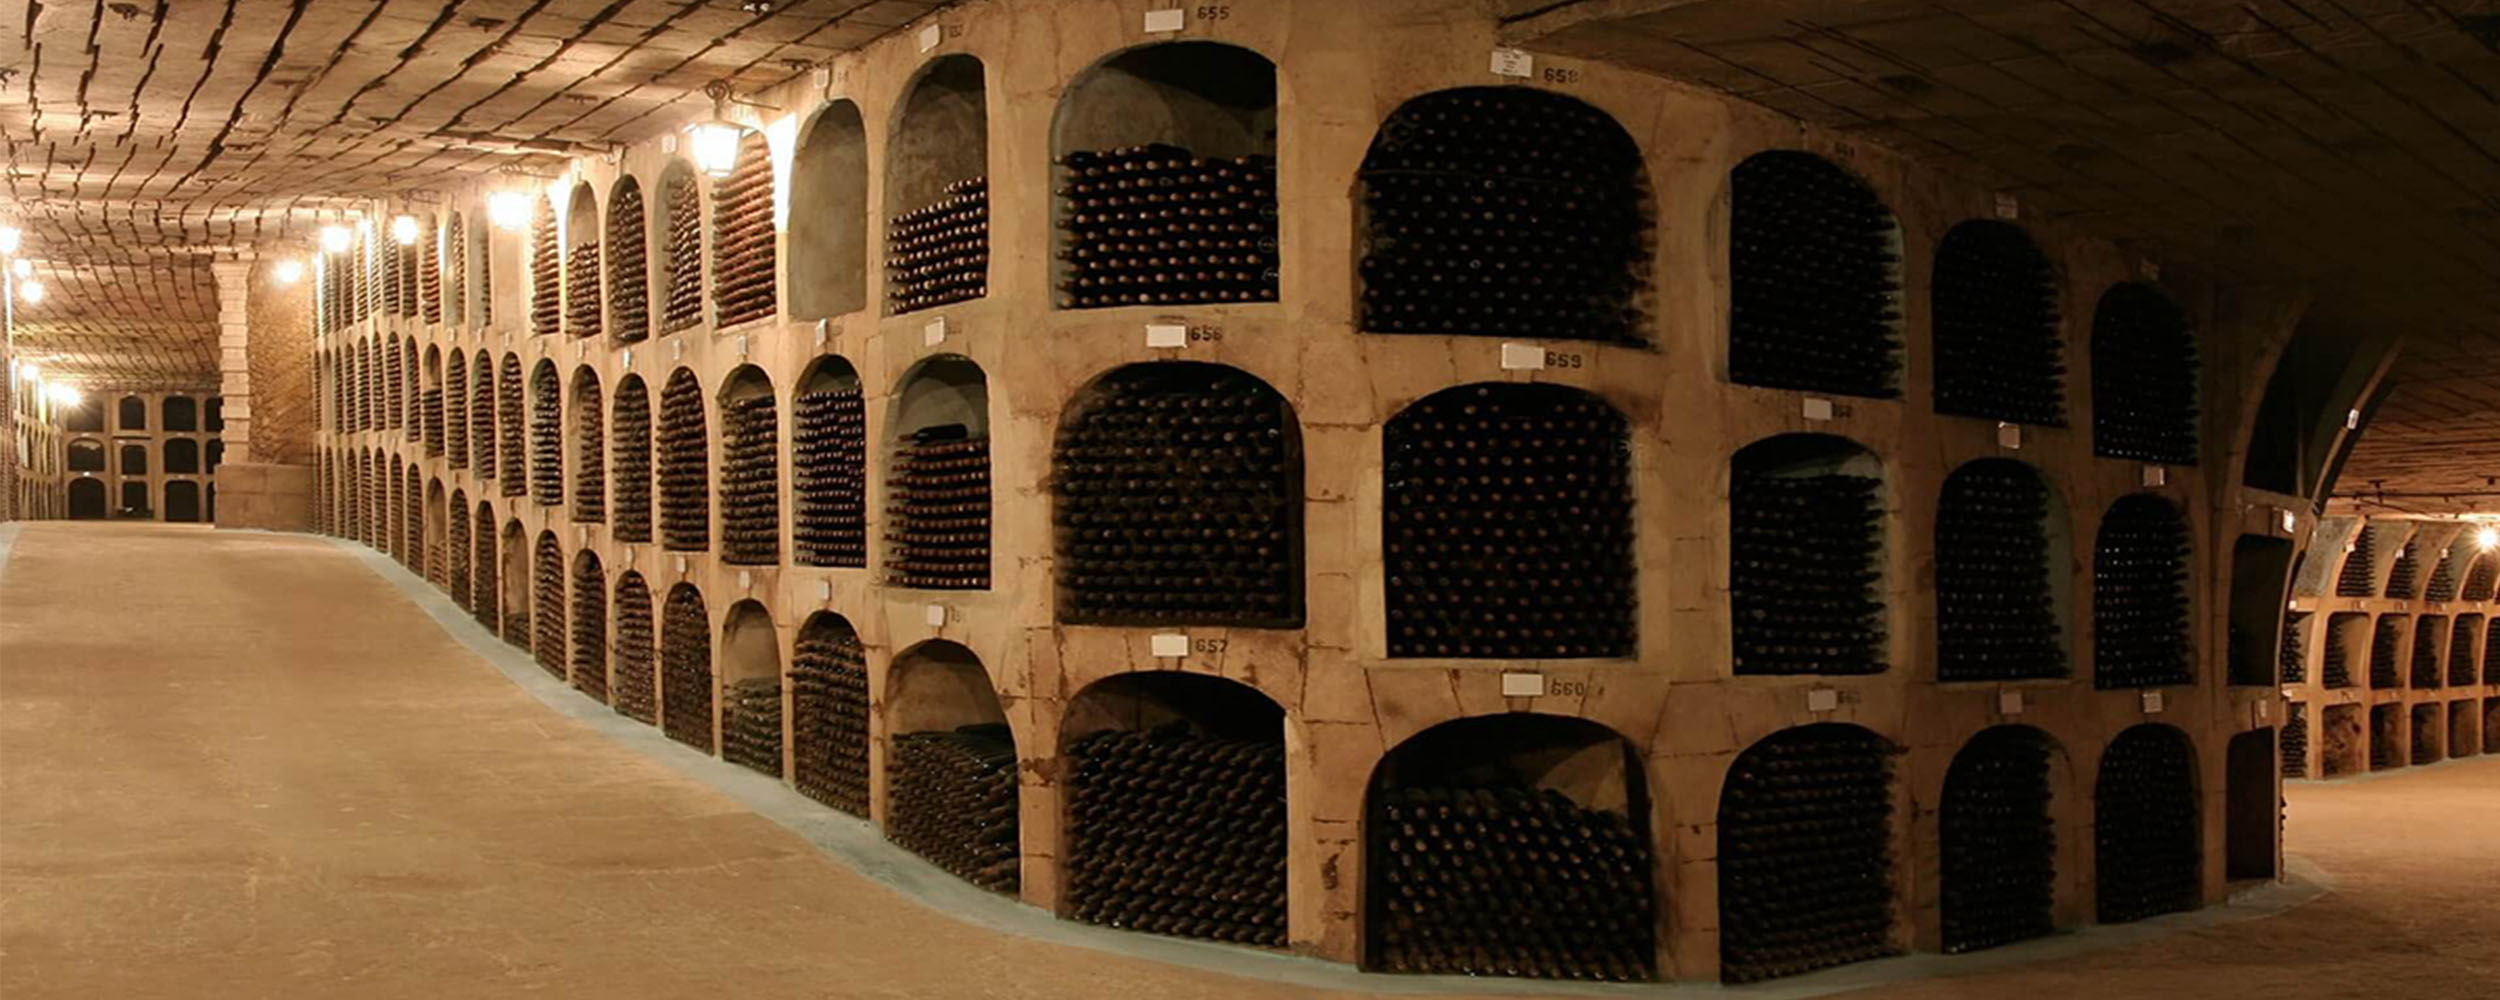 Milestii Mici Wine Cellar